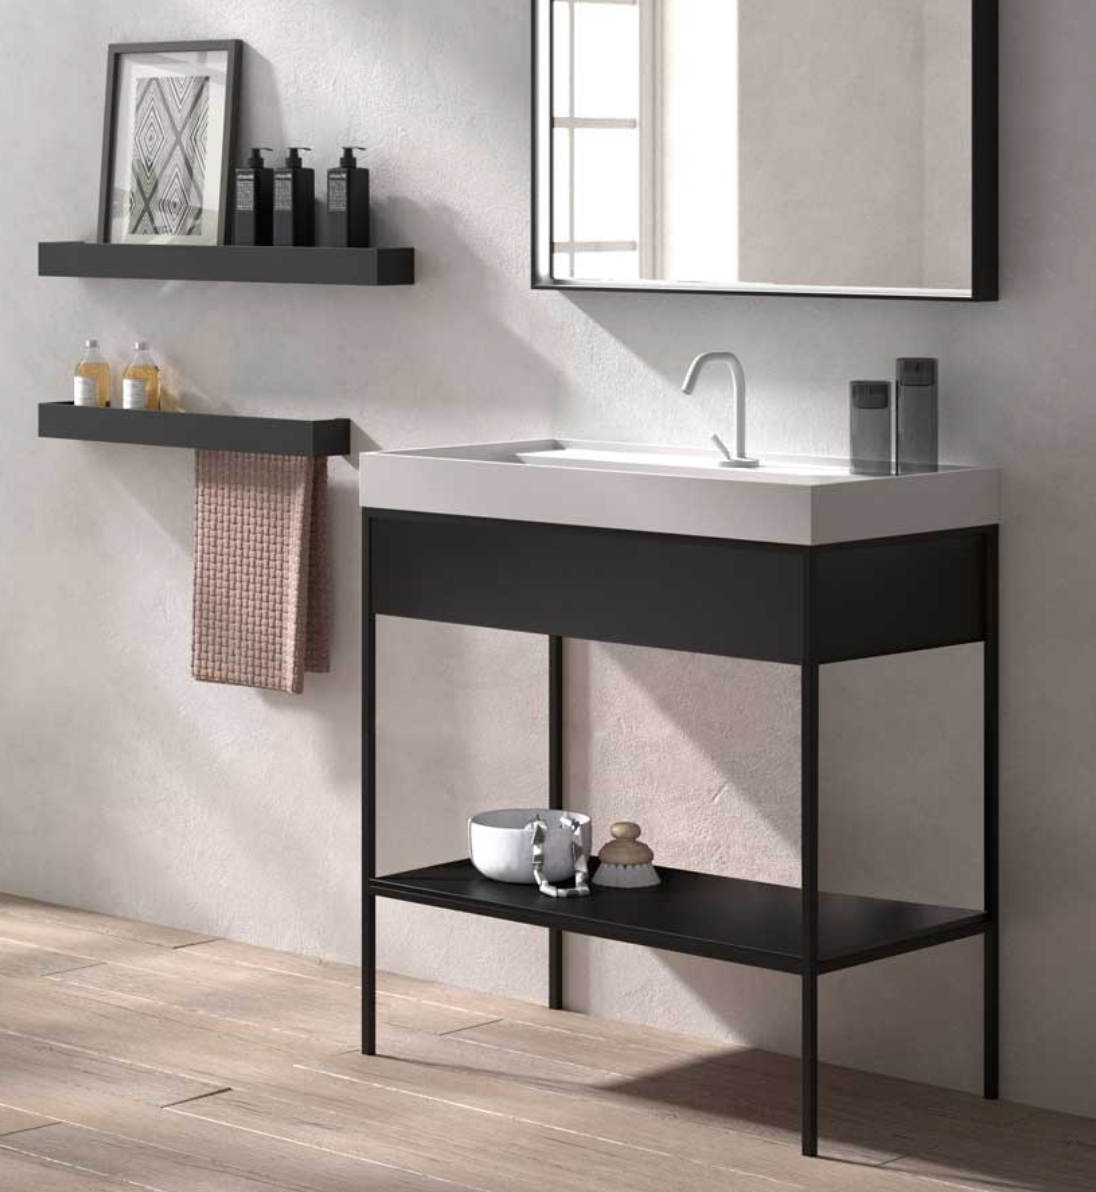 Encimera con faldón Tribeca de Stoneacril® con lavabo integrado de Madero Atelier para mueble Tribeca